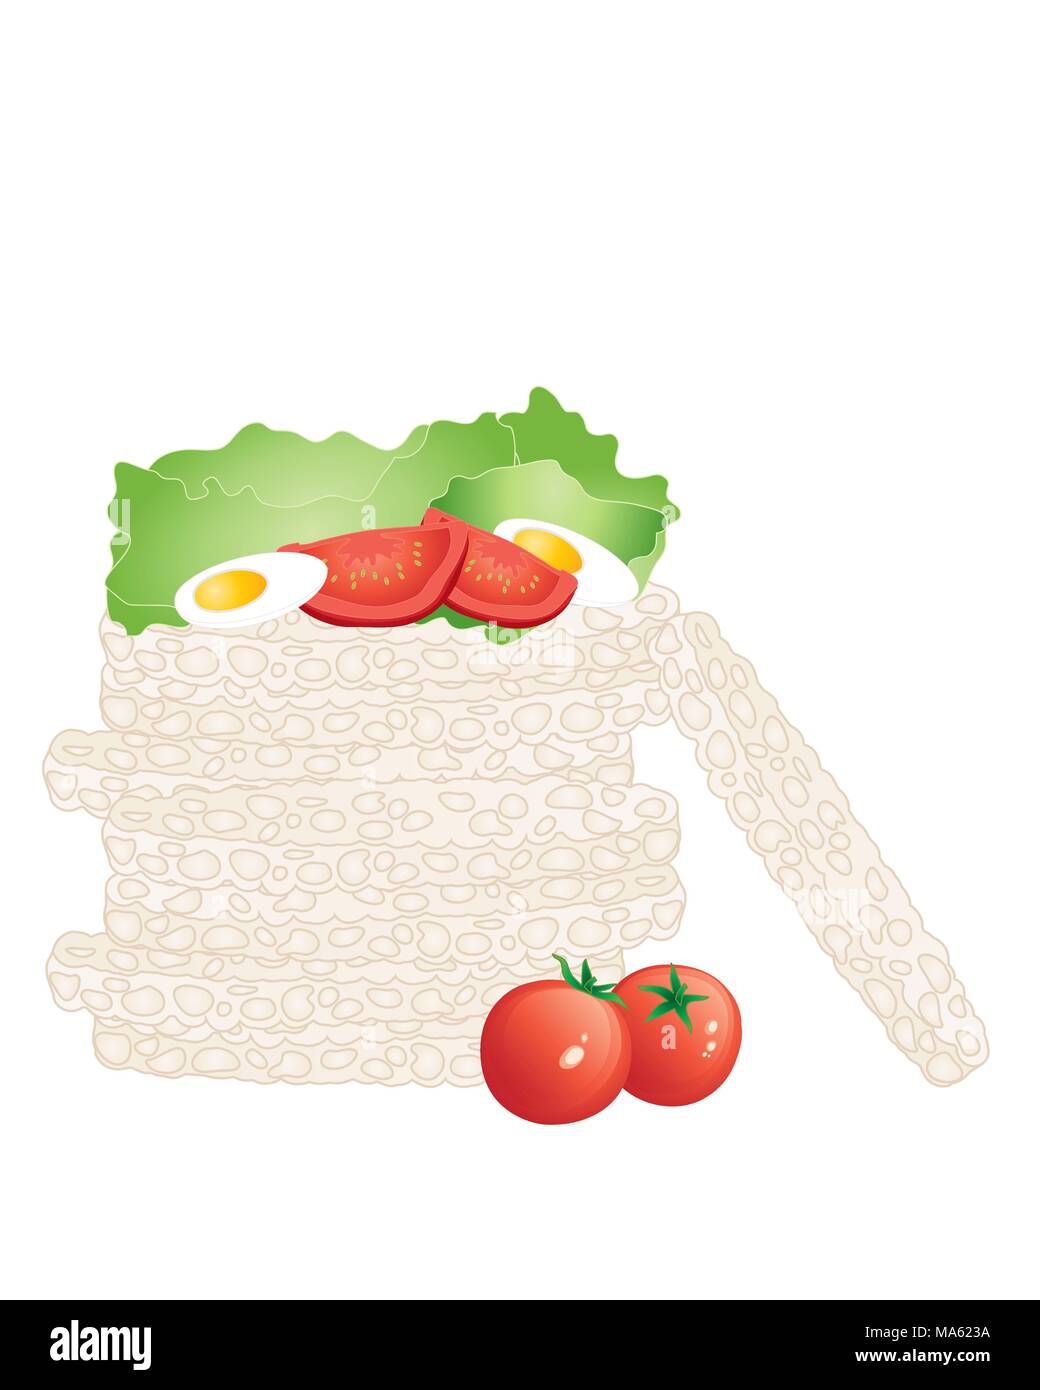 Una illustrazione vettoriale in formato eps formato 10 di una pila di torte di riso in una pila con organici freschi pomodori Lattuga e Uovo isolato su uno sfondo bianco Illustrazione Vettoriale